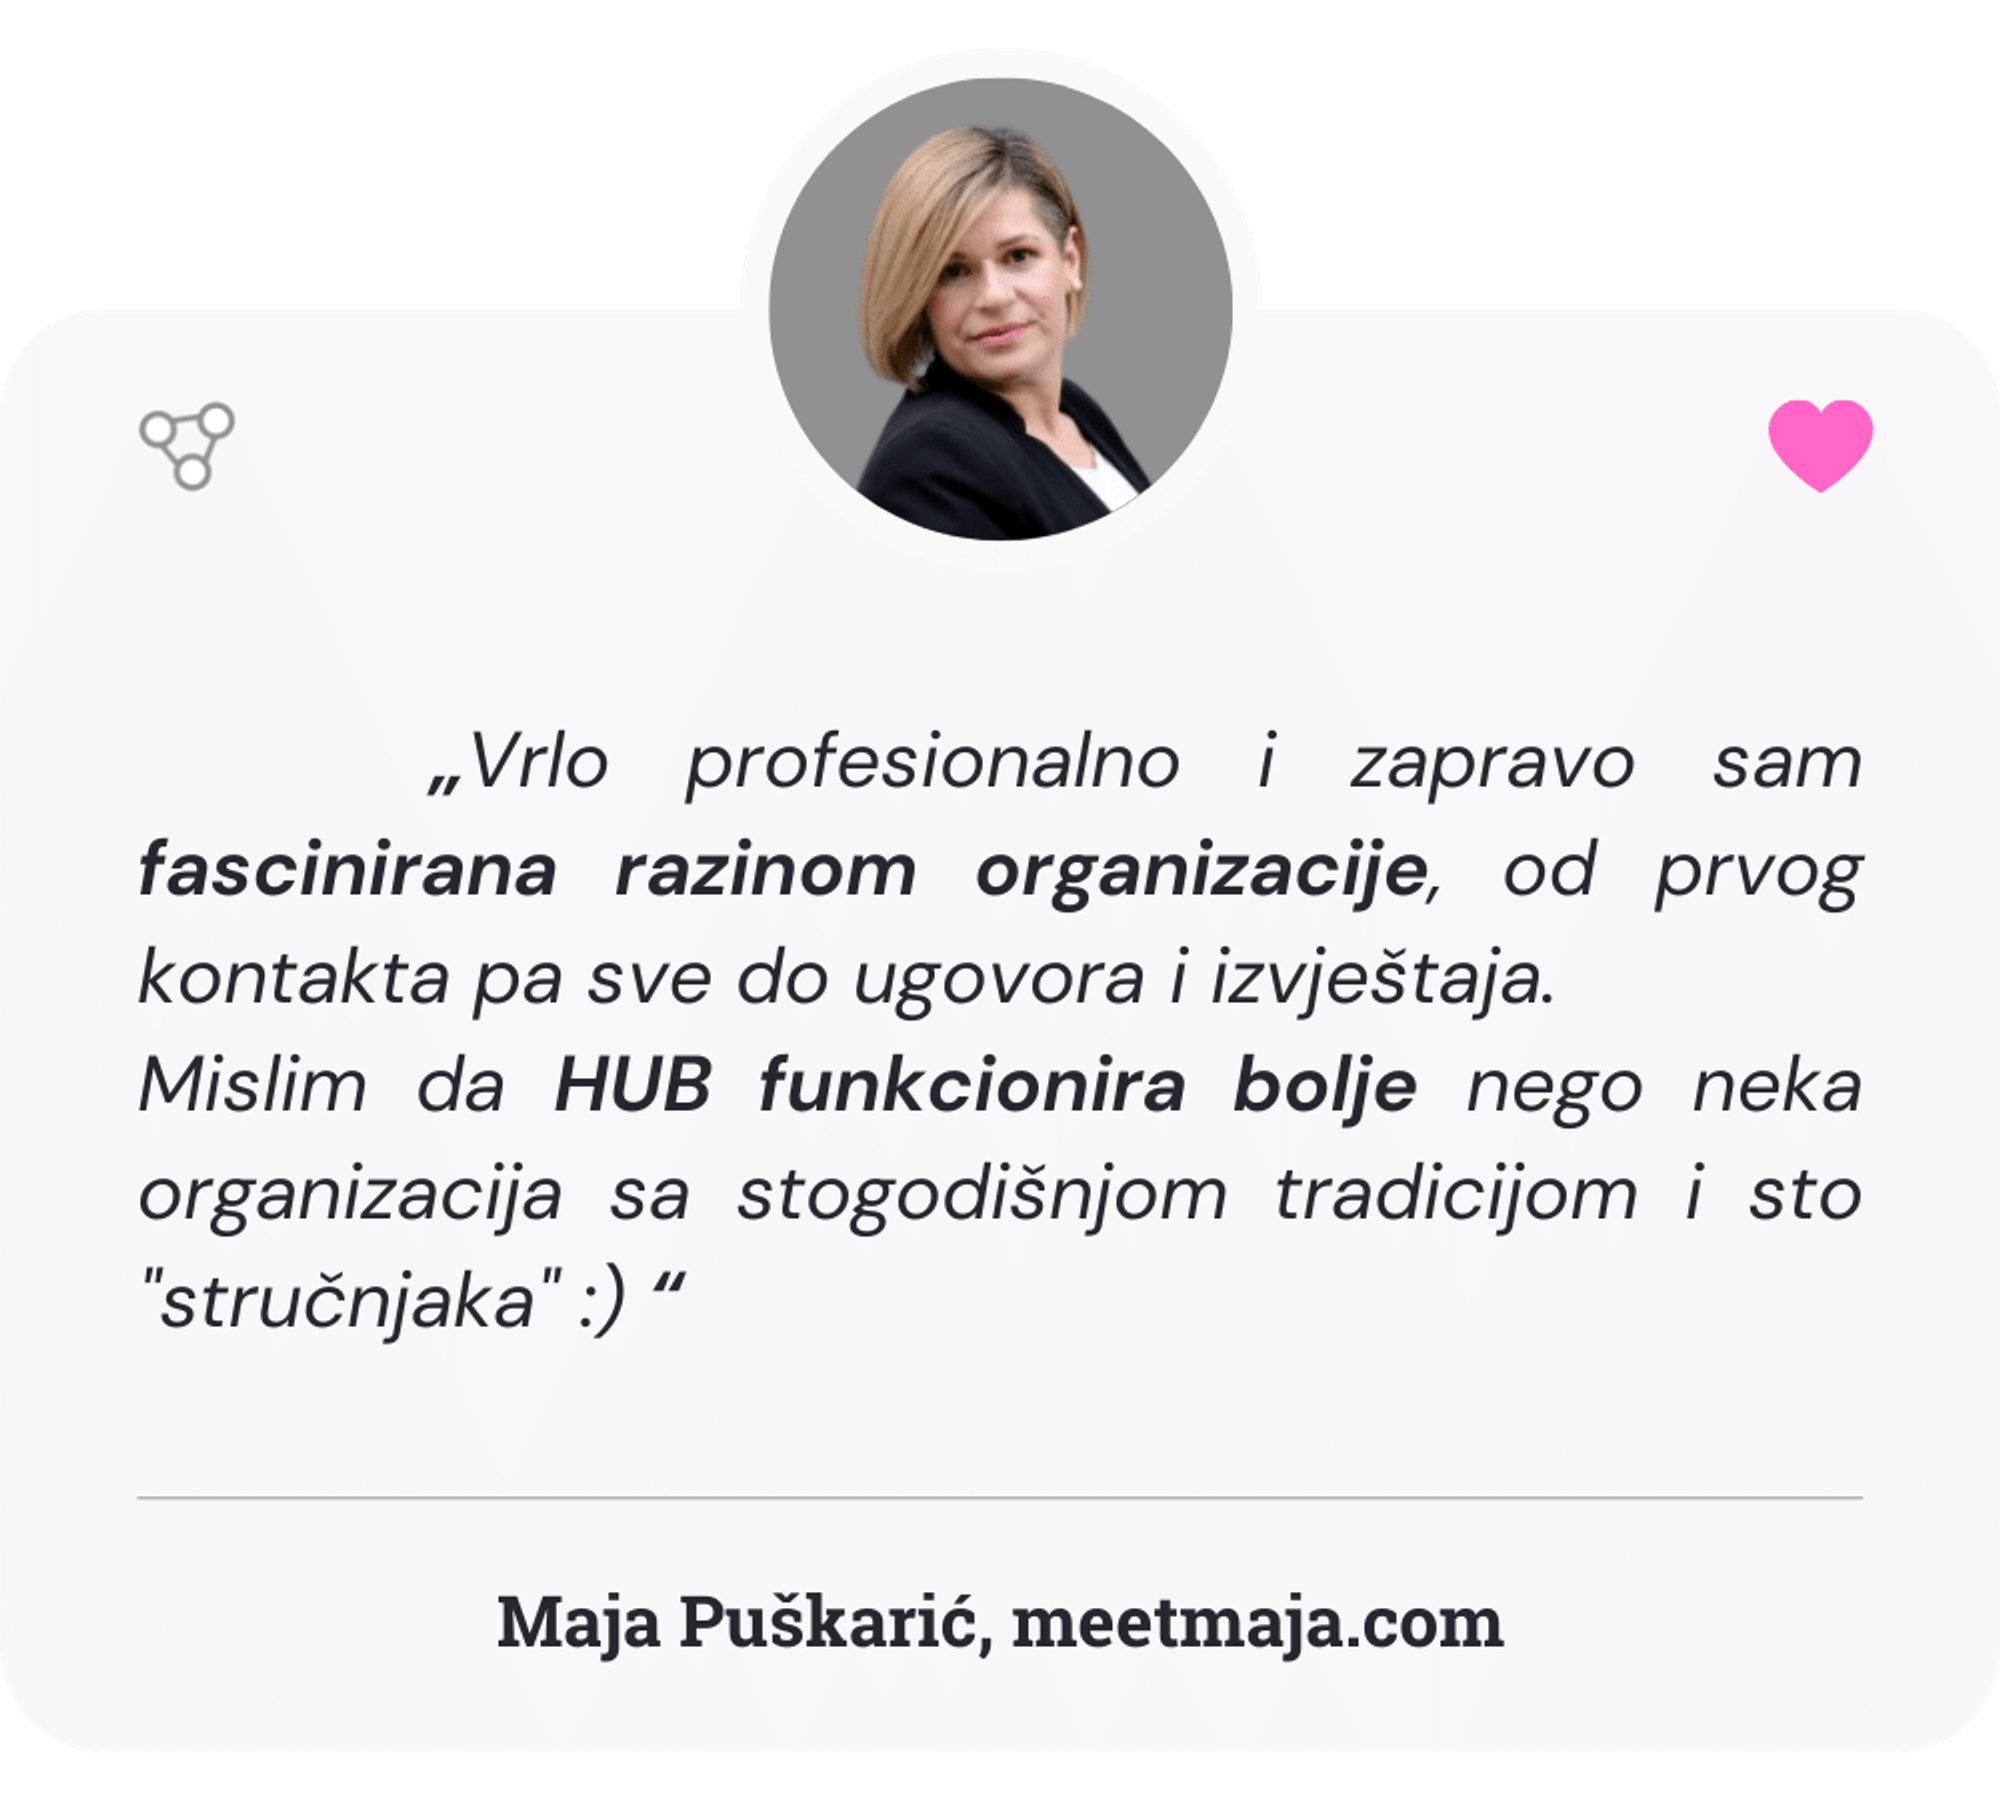 Maja Puškarić je LinkedIn Coach i konzultant (meetmaja.com). Virtualni asistenti Go2human Huba pomažu Maji kod pripreme dokumenata za knjigovodstvo.